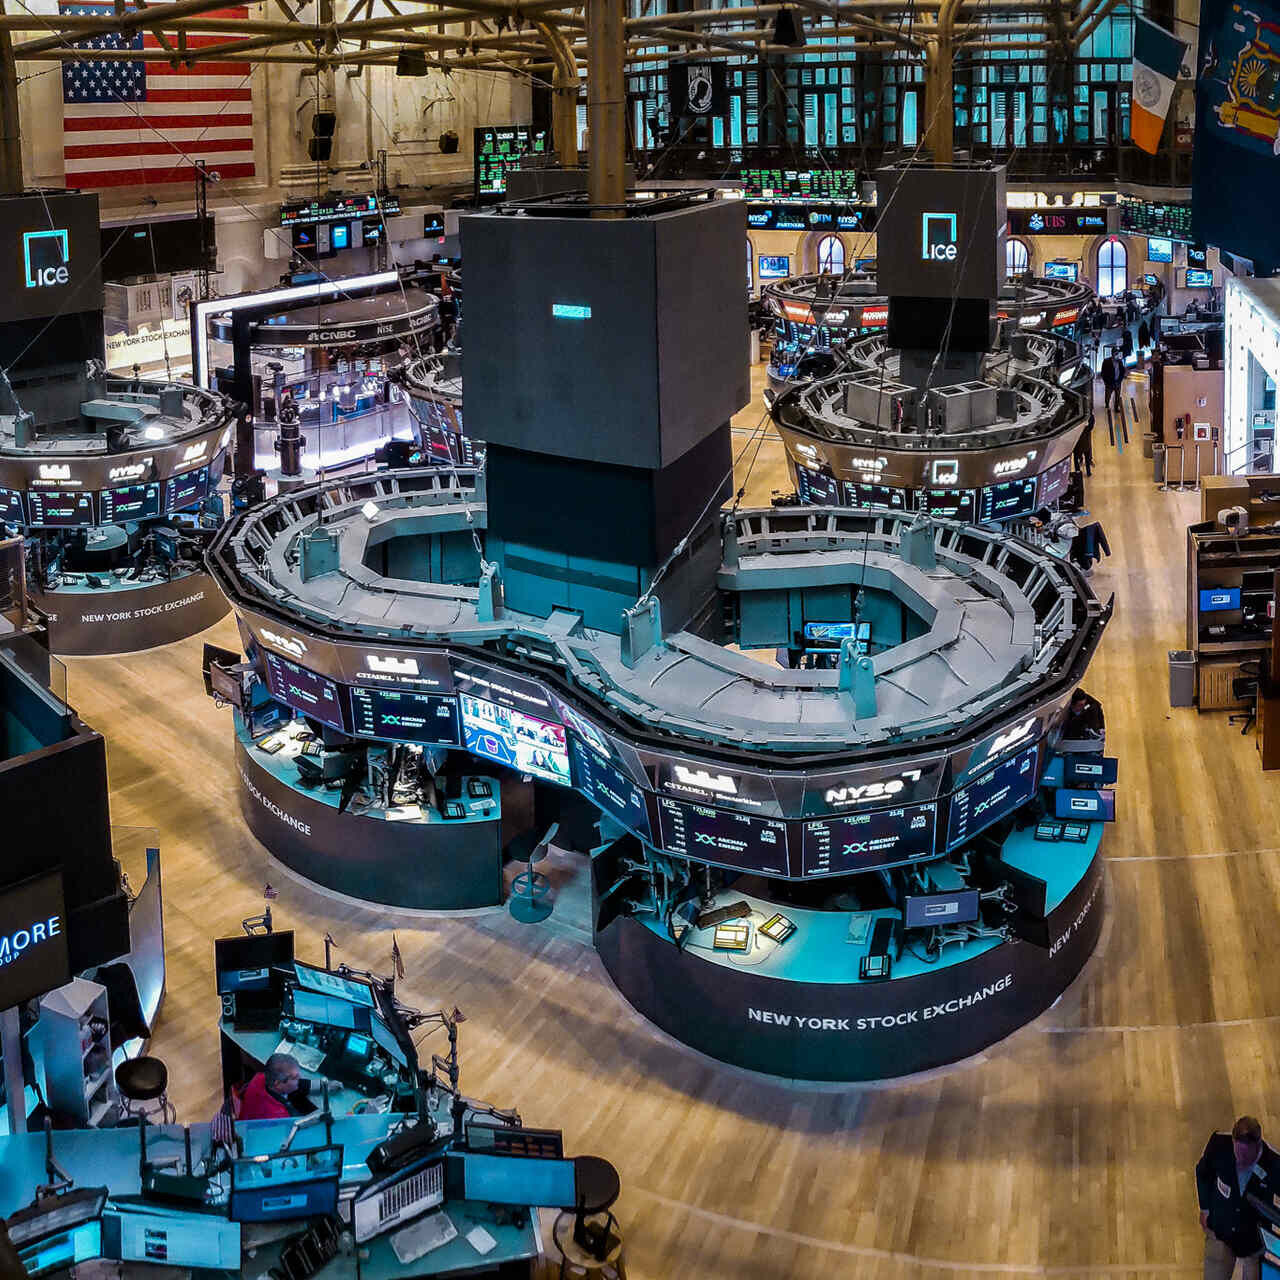 ETF: il trading floor della Borsa di New York (New York Stock Exchange o NYSE in sigla), con sede nella celebre Wall Street e fondata nel lontano 1817